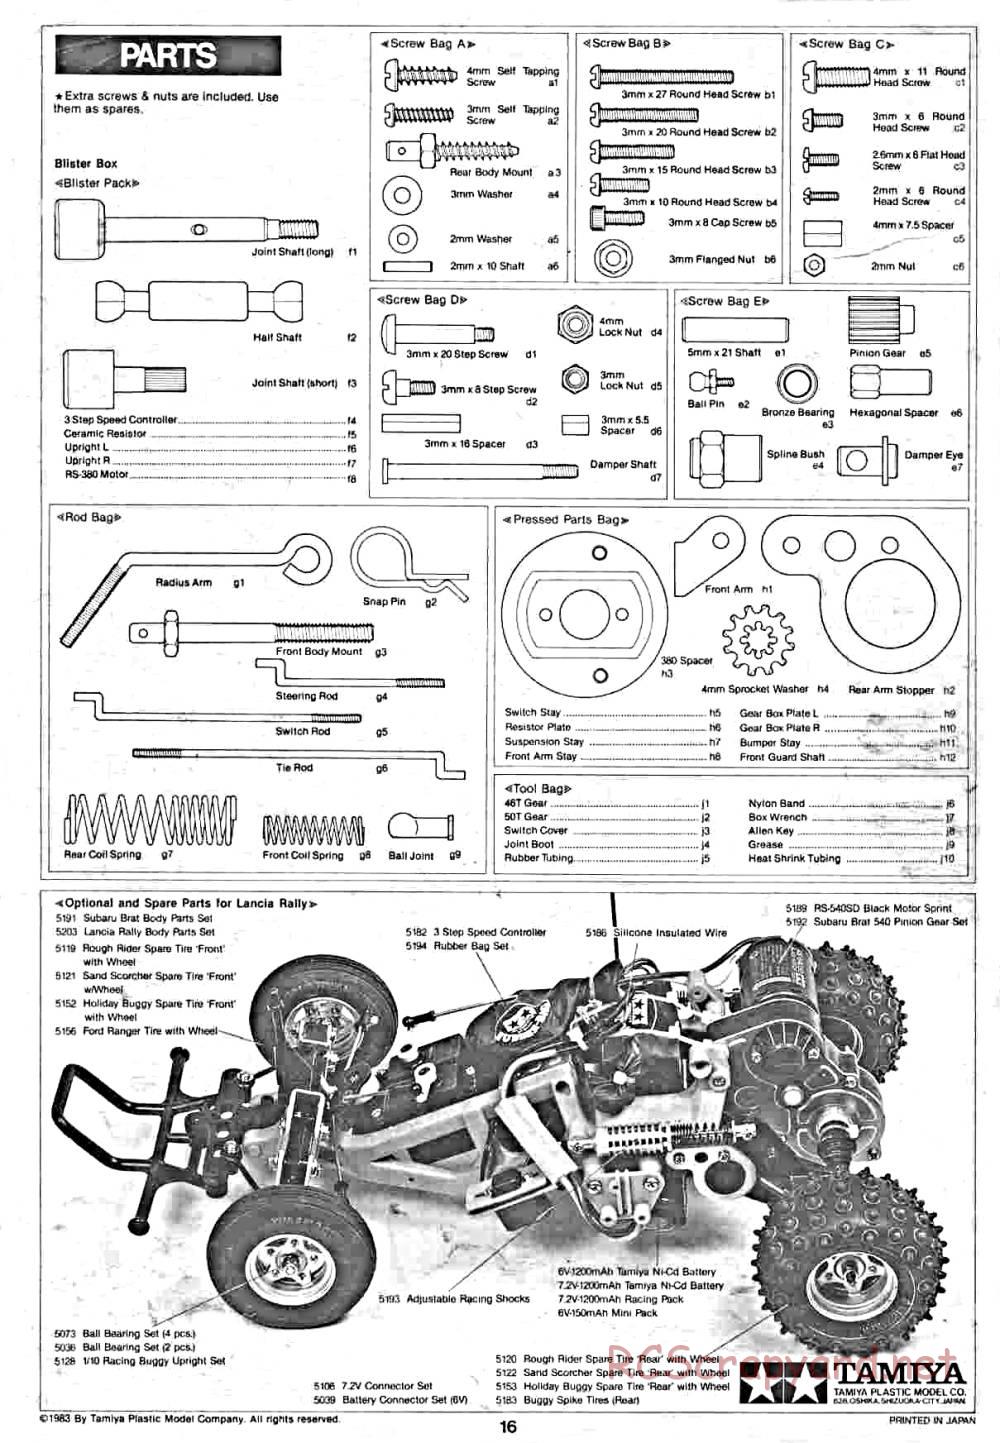 Tamiya - Lancia Rally - 58040 - Manual - Page 16